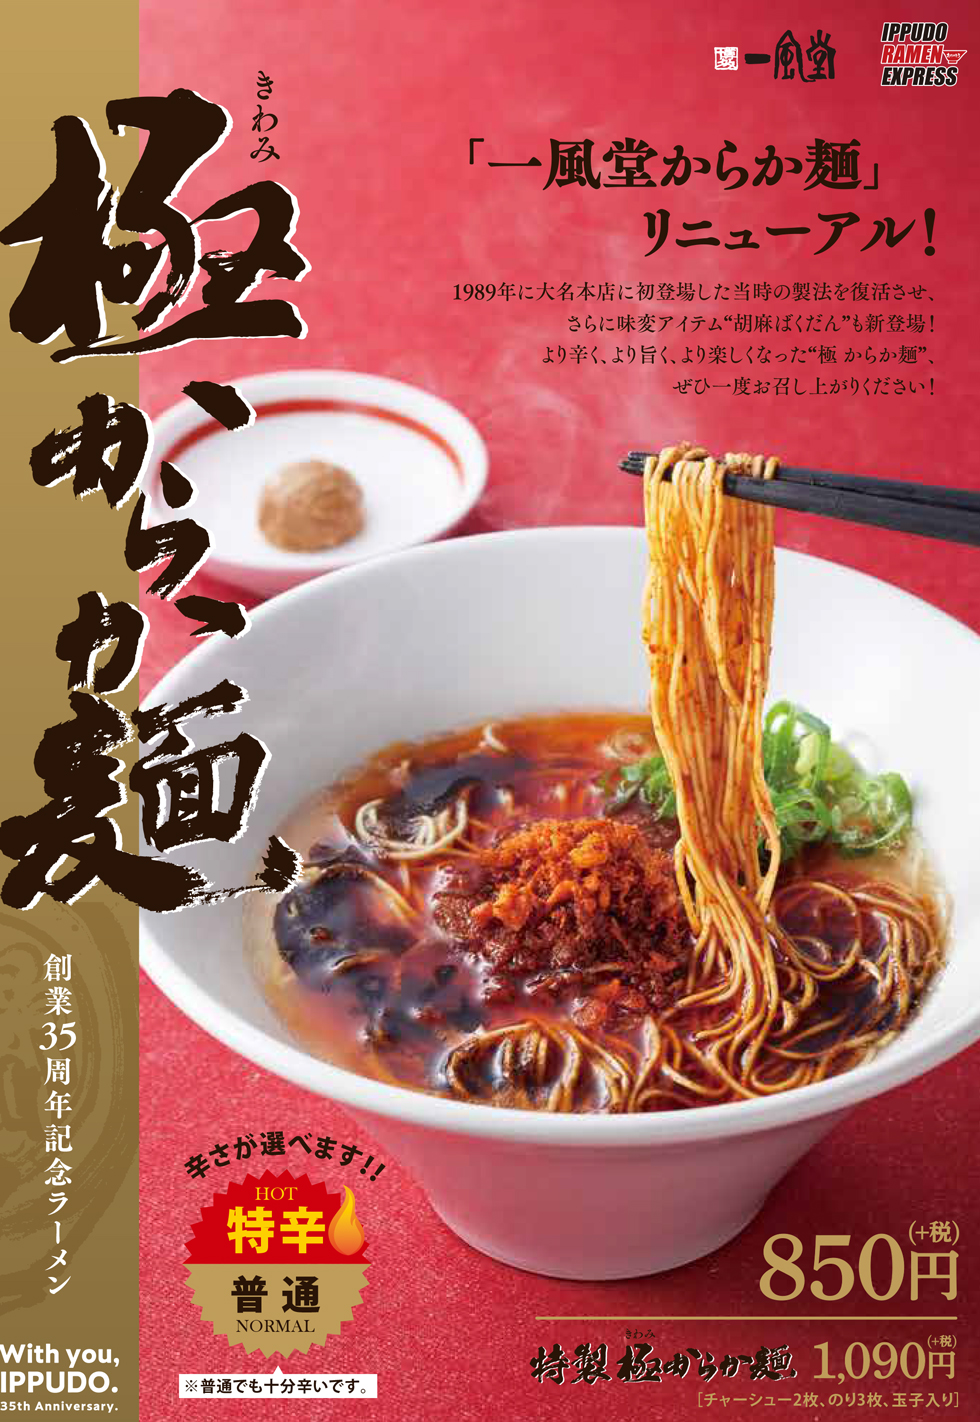 10 16 金 一風堂35周年 創業祭 極からか麺 発売開始 ラーメン 一風堂 Ramen Ippudo